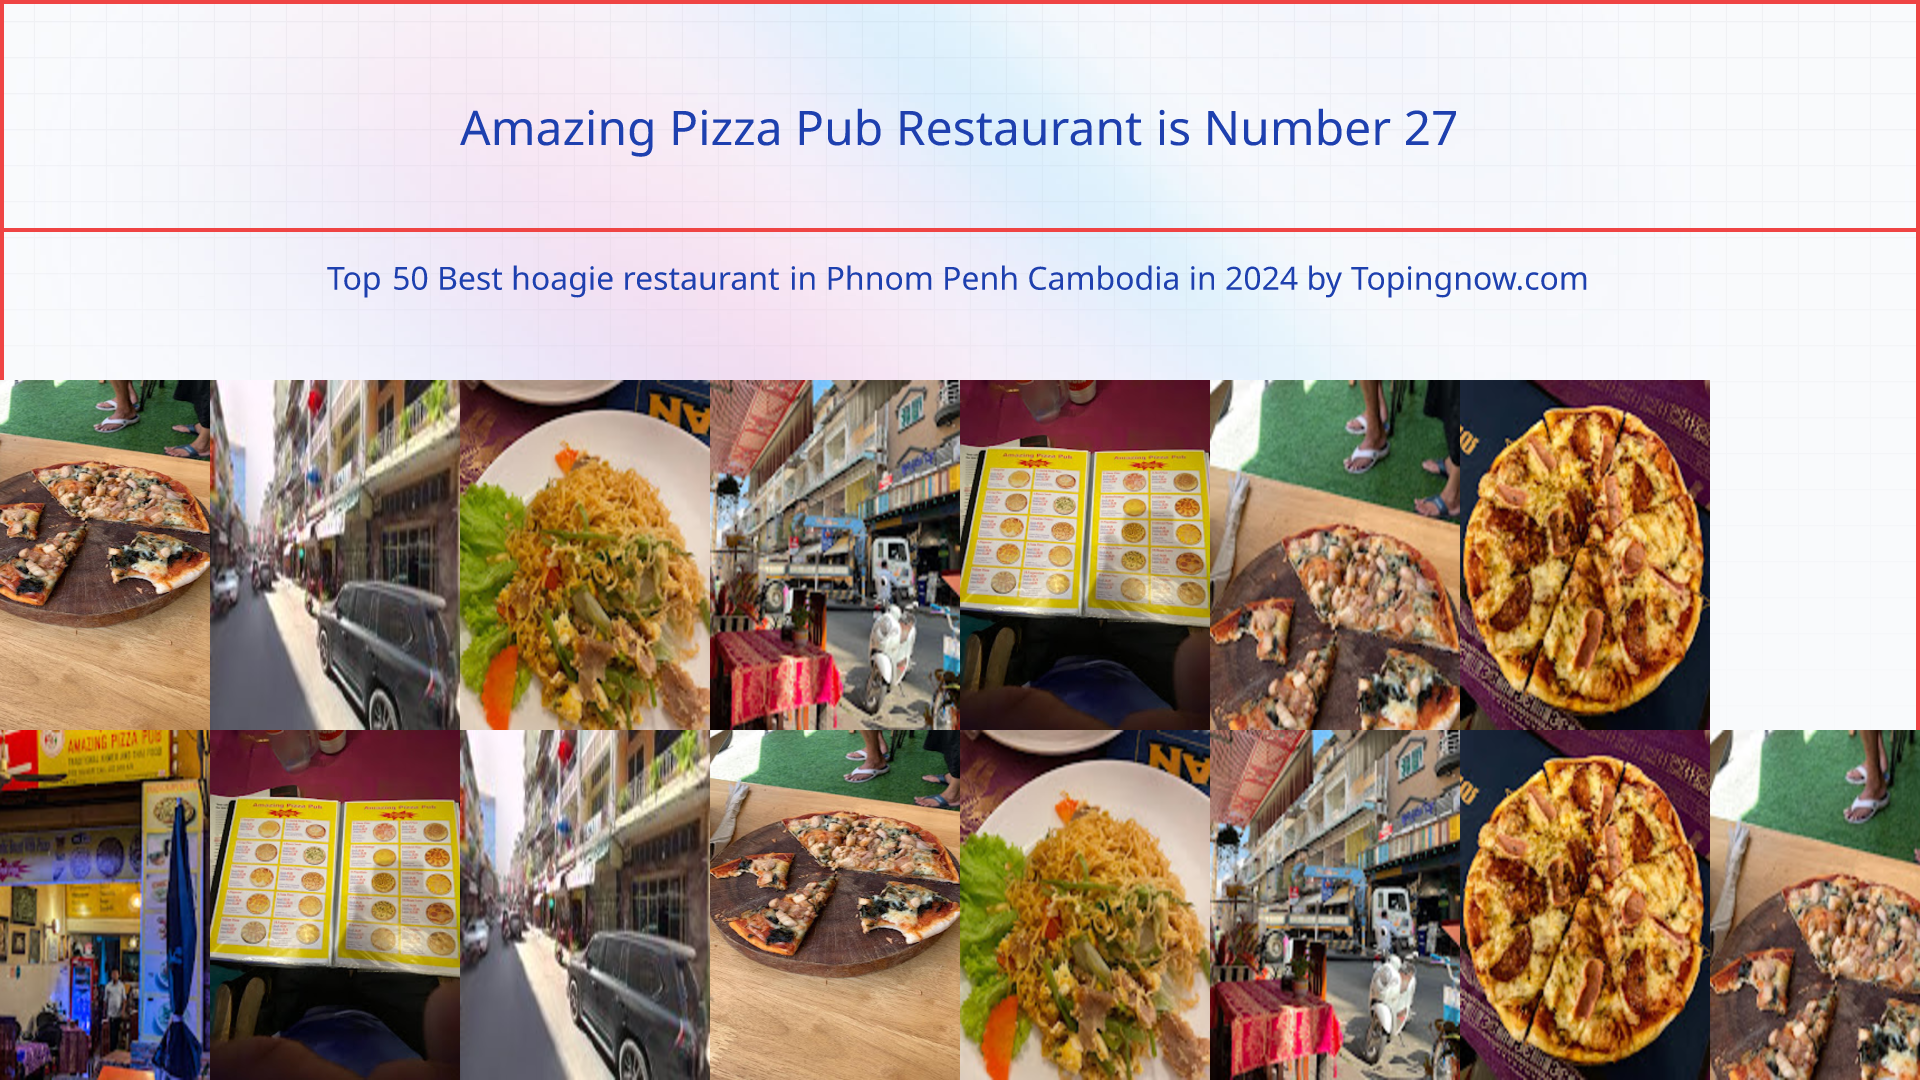 Amazing Pizza Pub Restaurant: Top 50 Best hoagie restaurant in Phnom Penh Cambodia in 2024